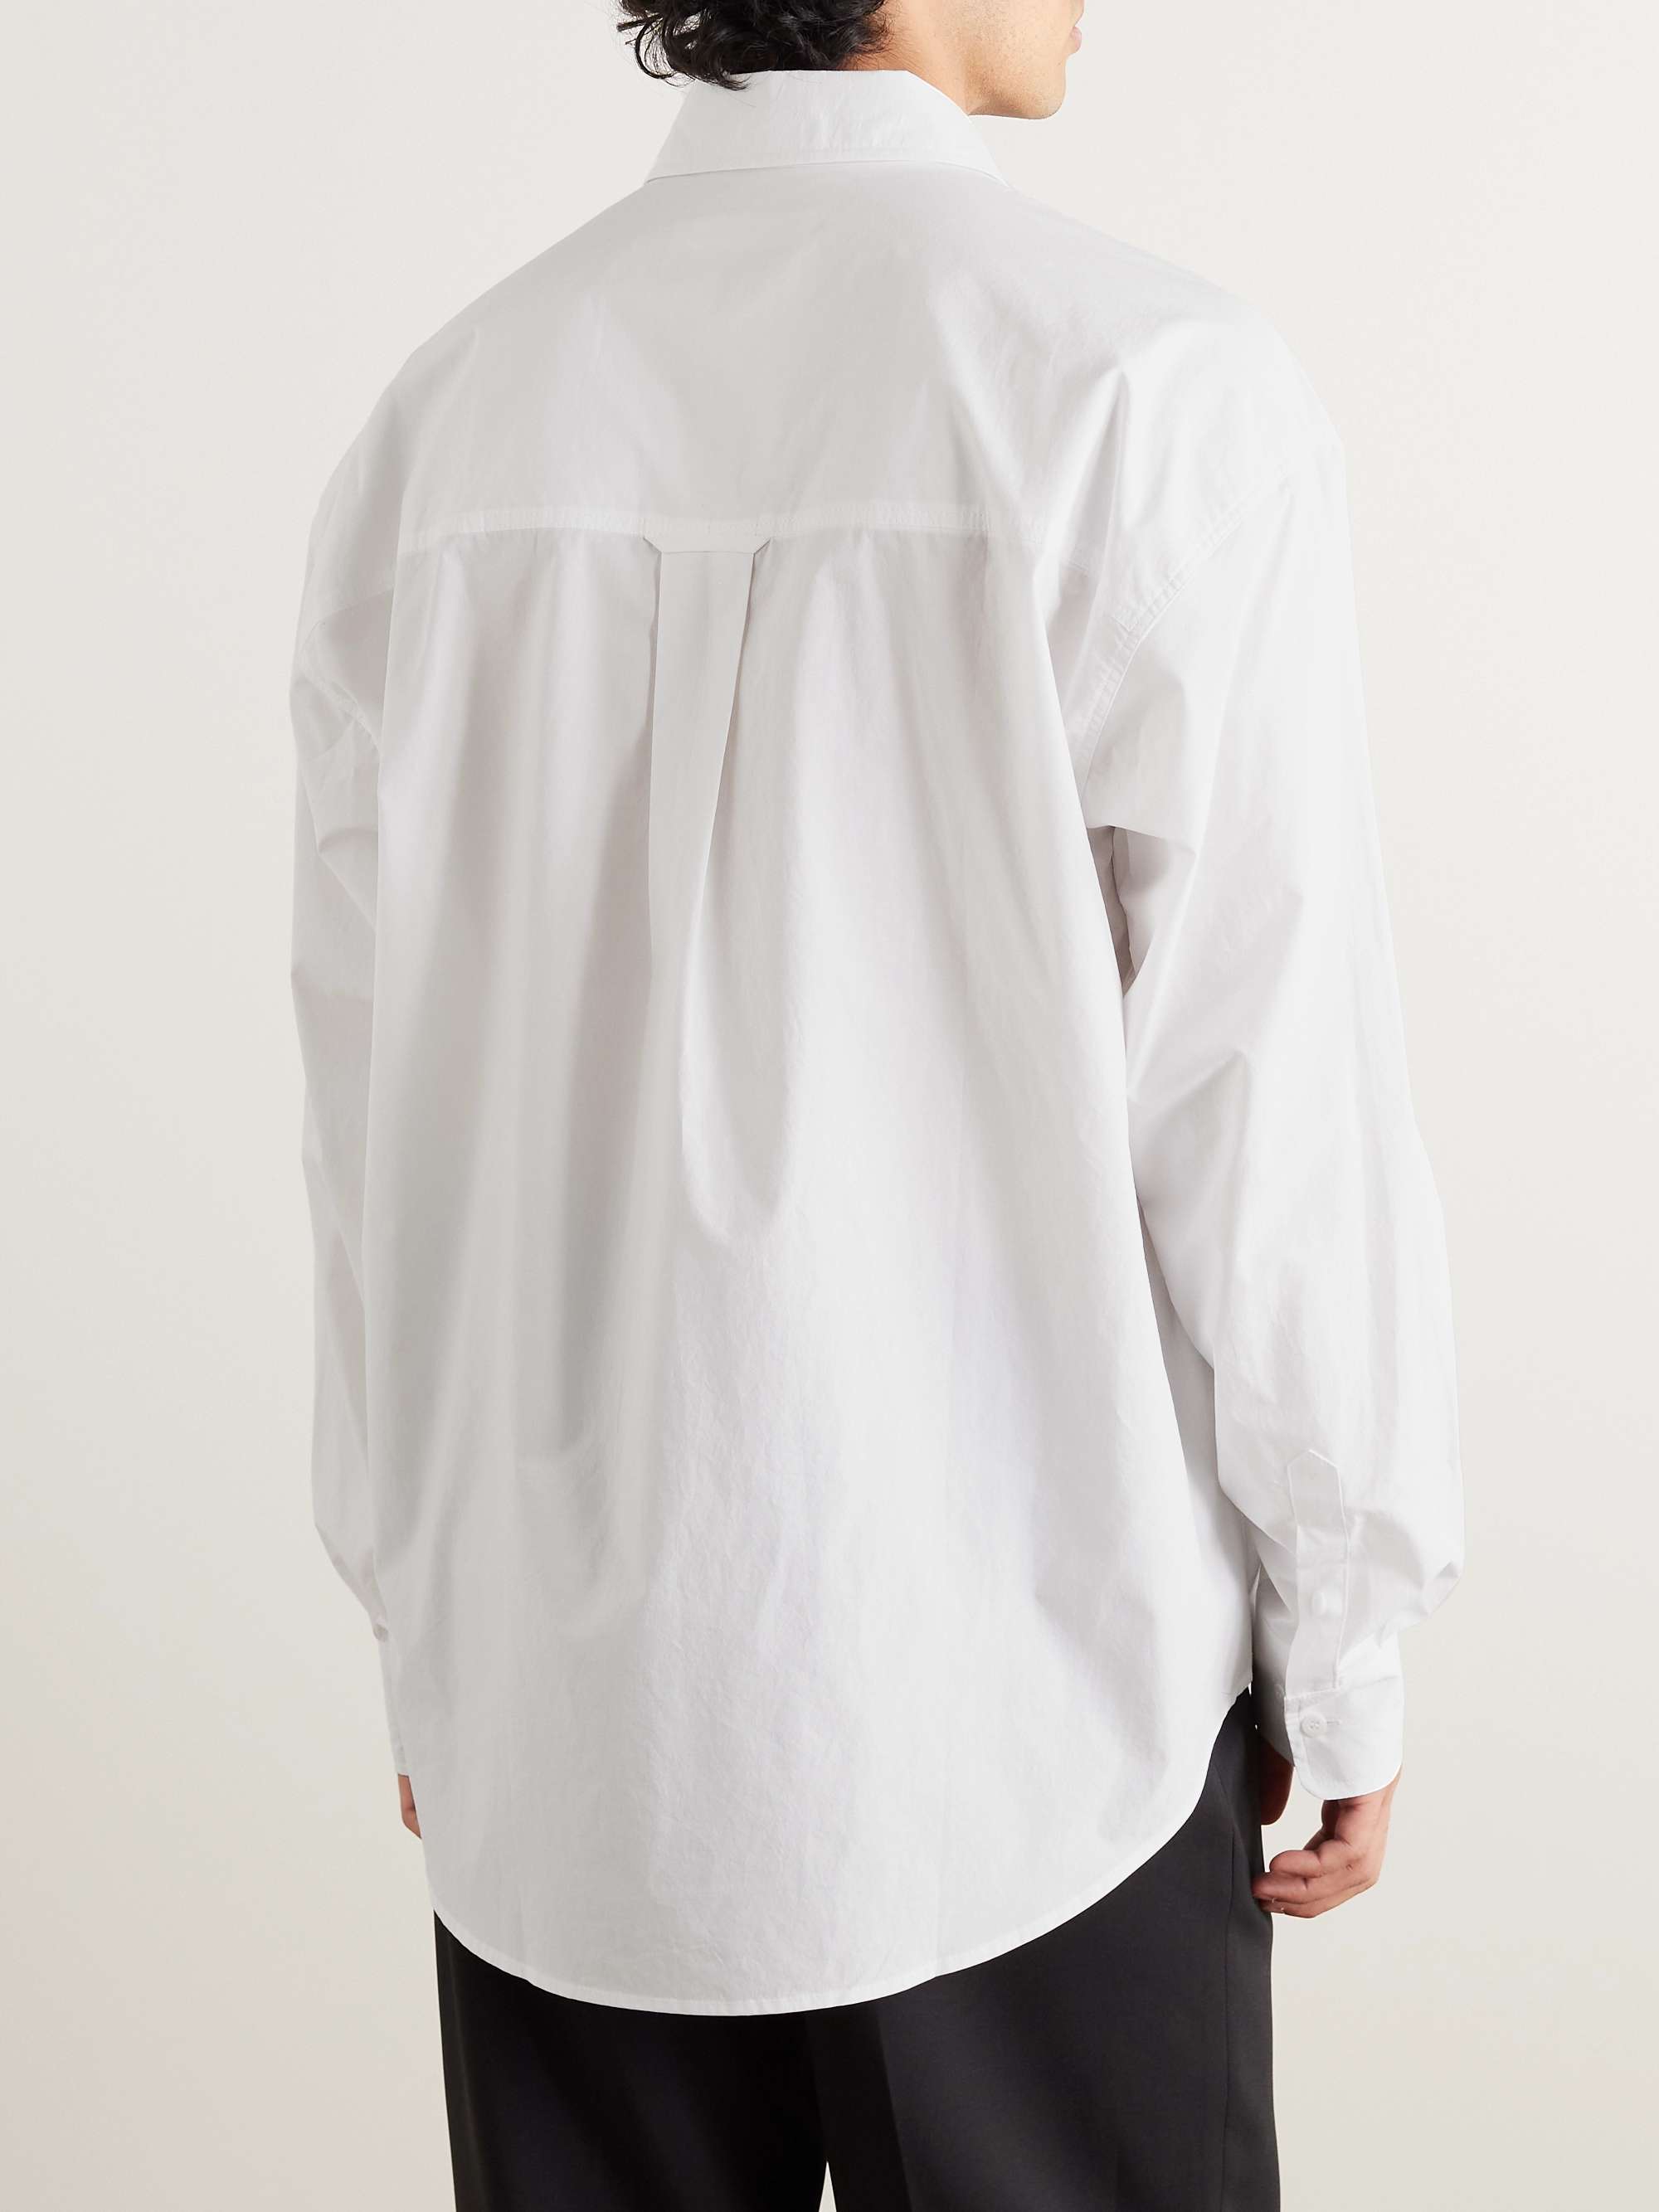 THE FRANKIE SHOP Gus Oversized Cotton-Poplin Shirt for Men | MR PORTER